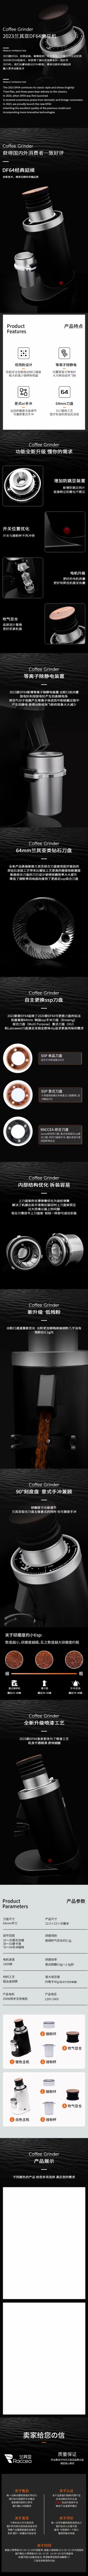 DF64 Gen 2 Single Dose Coffee Grinder